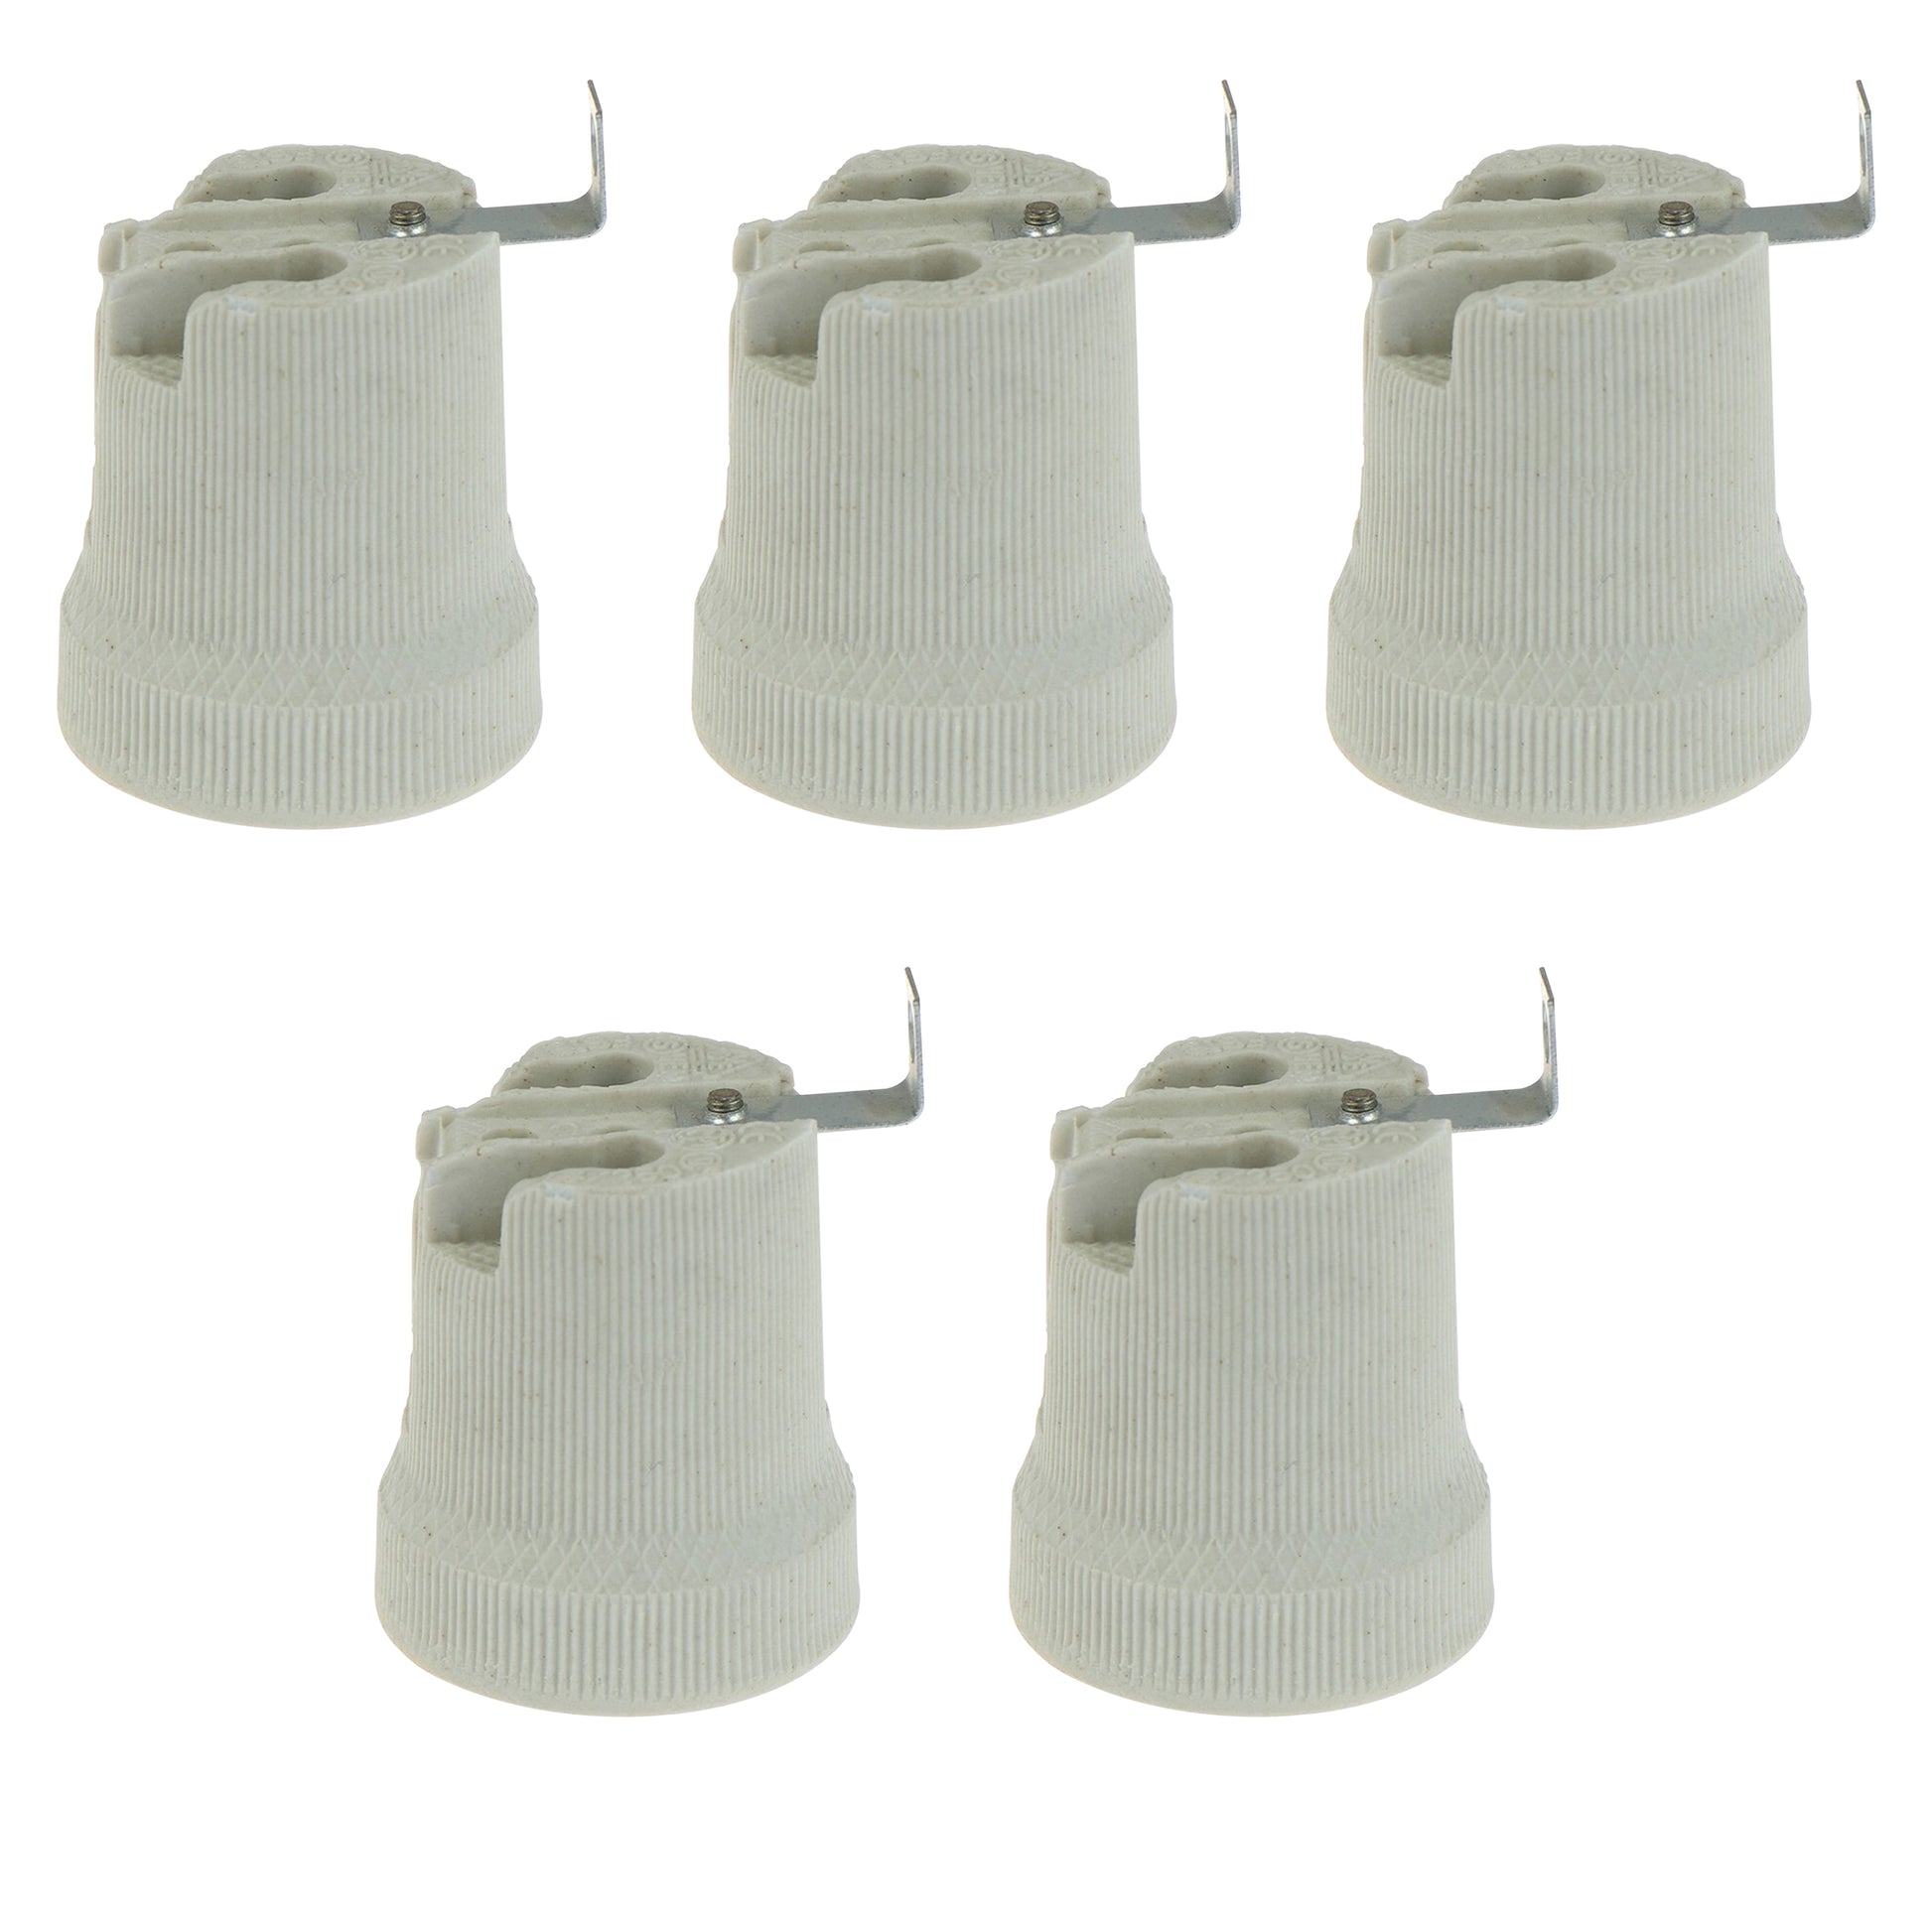 5 pack Edison Screw E27 Ceramic Socket